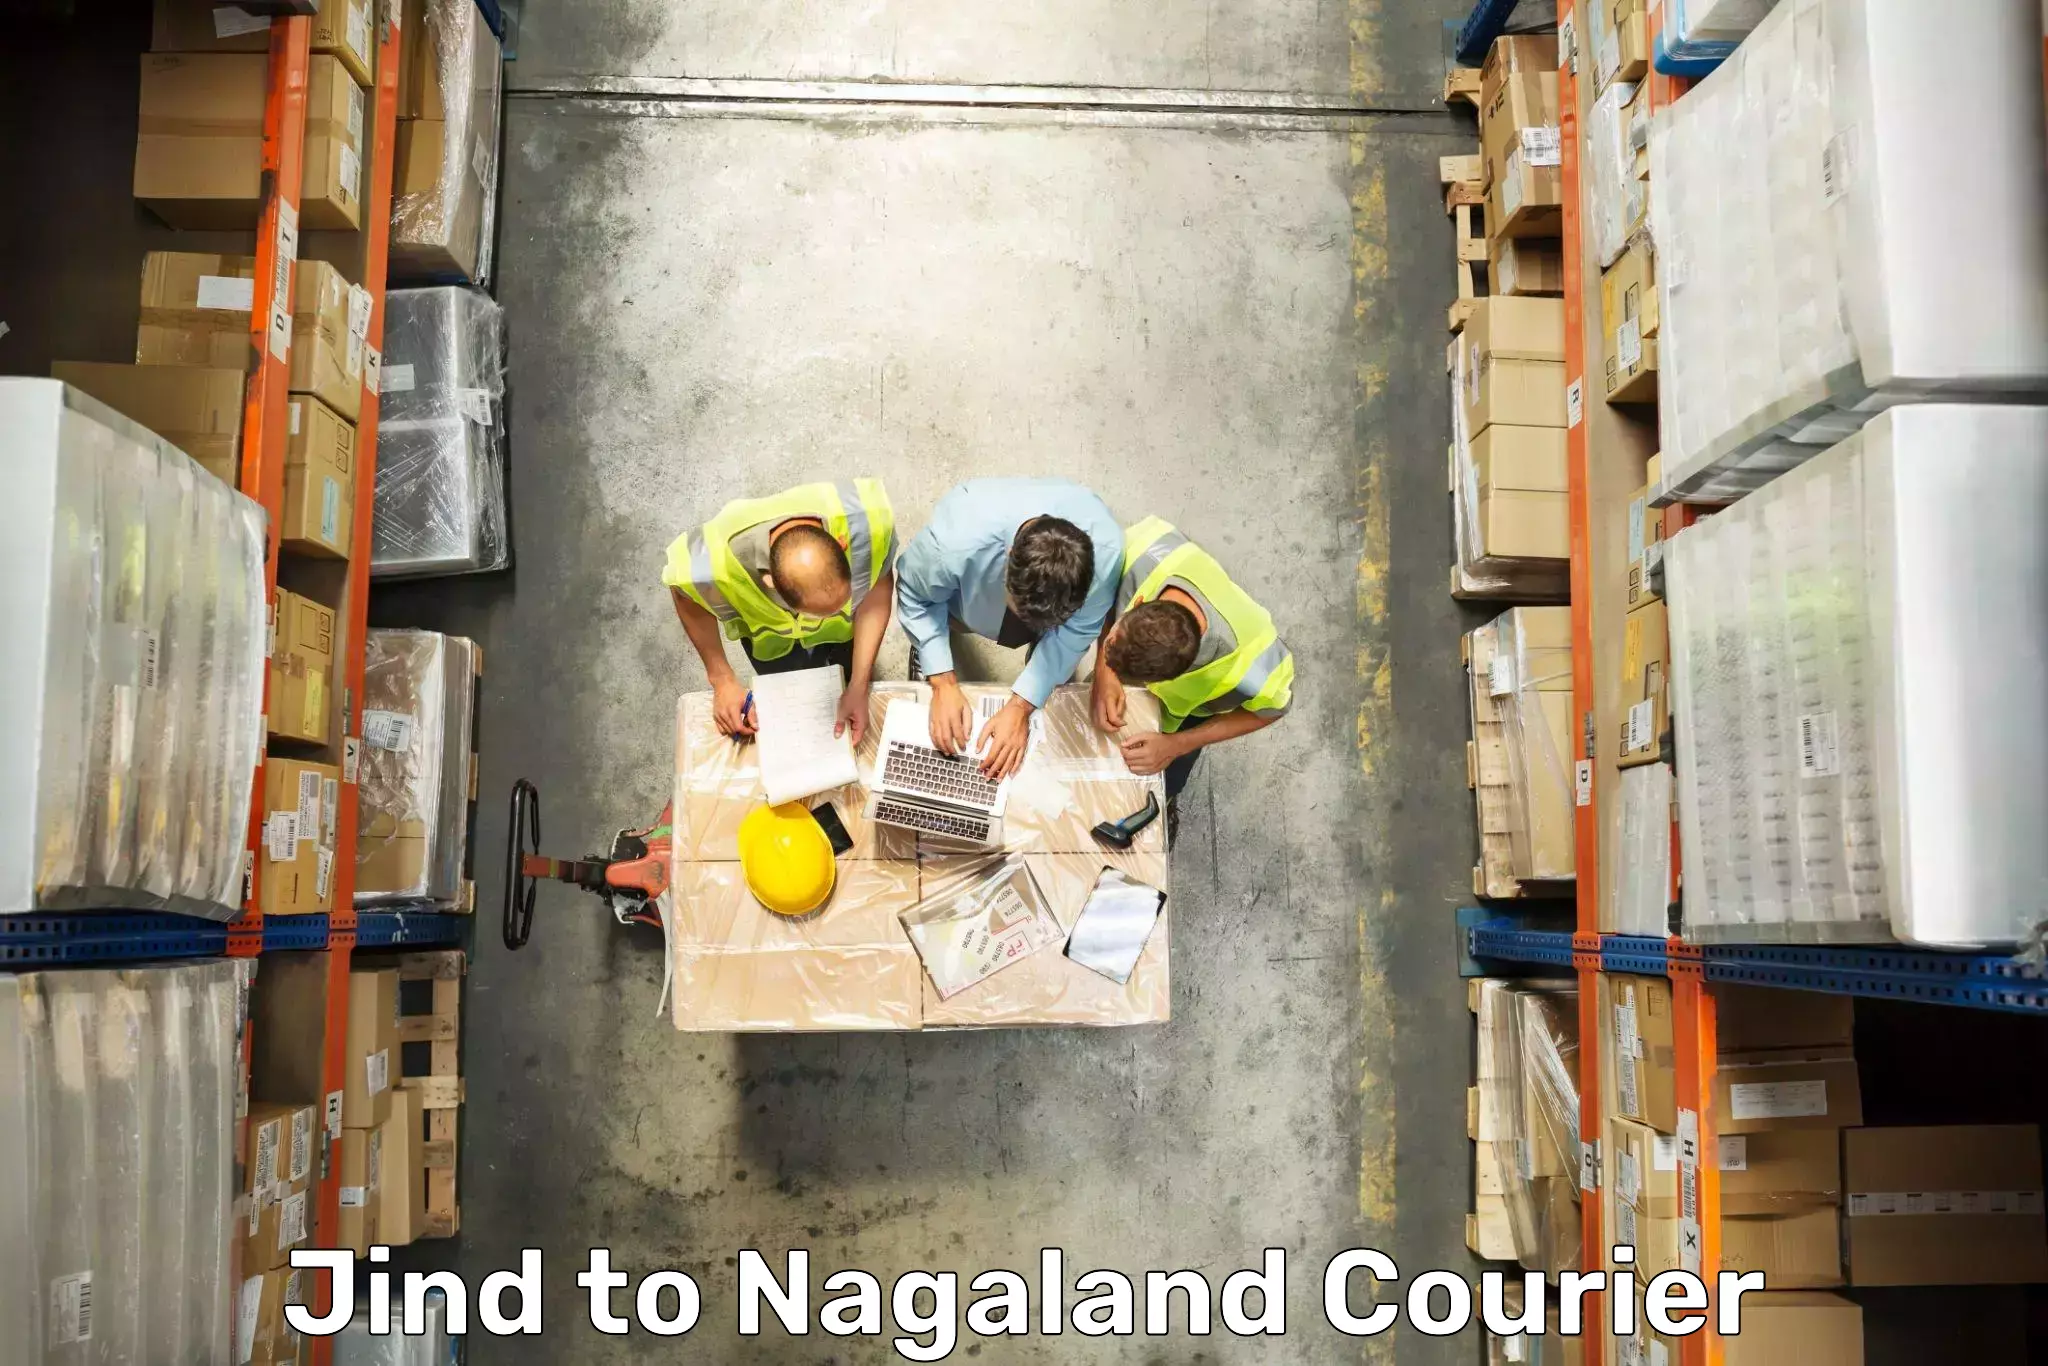 Baggage transport professionals Jind to Nagaland